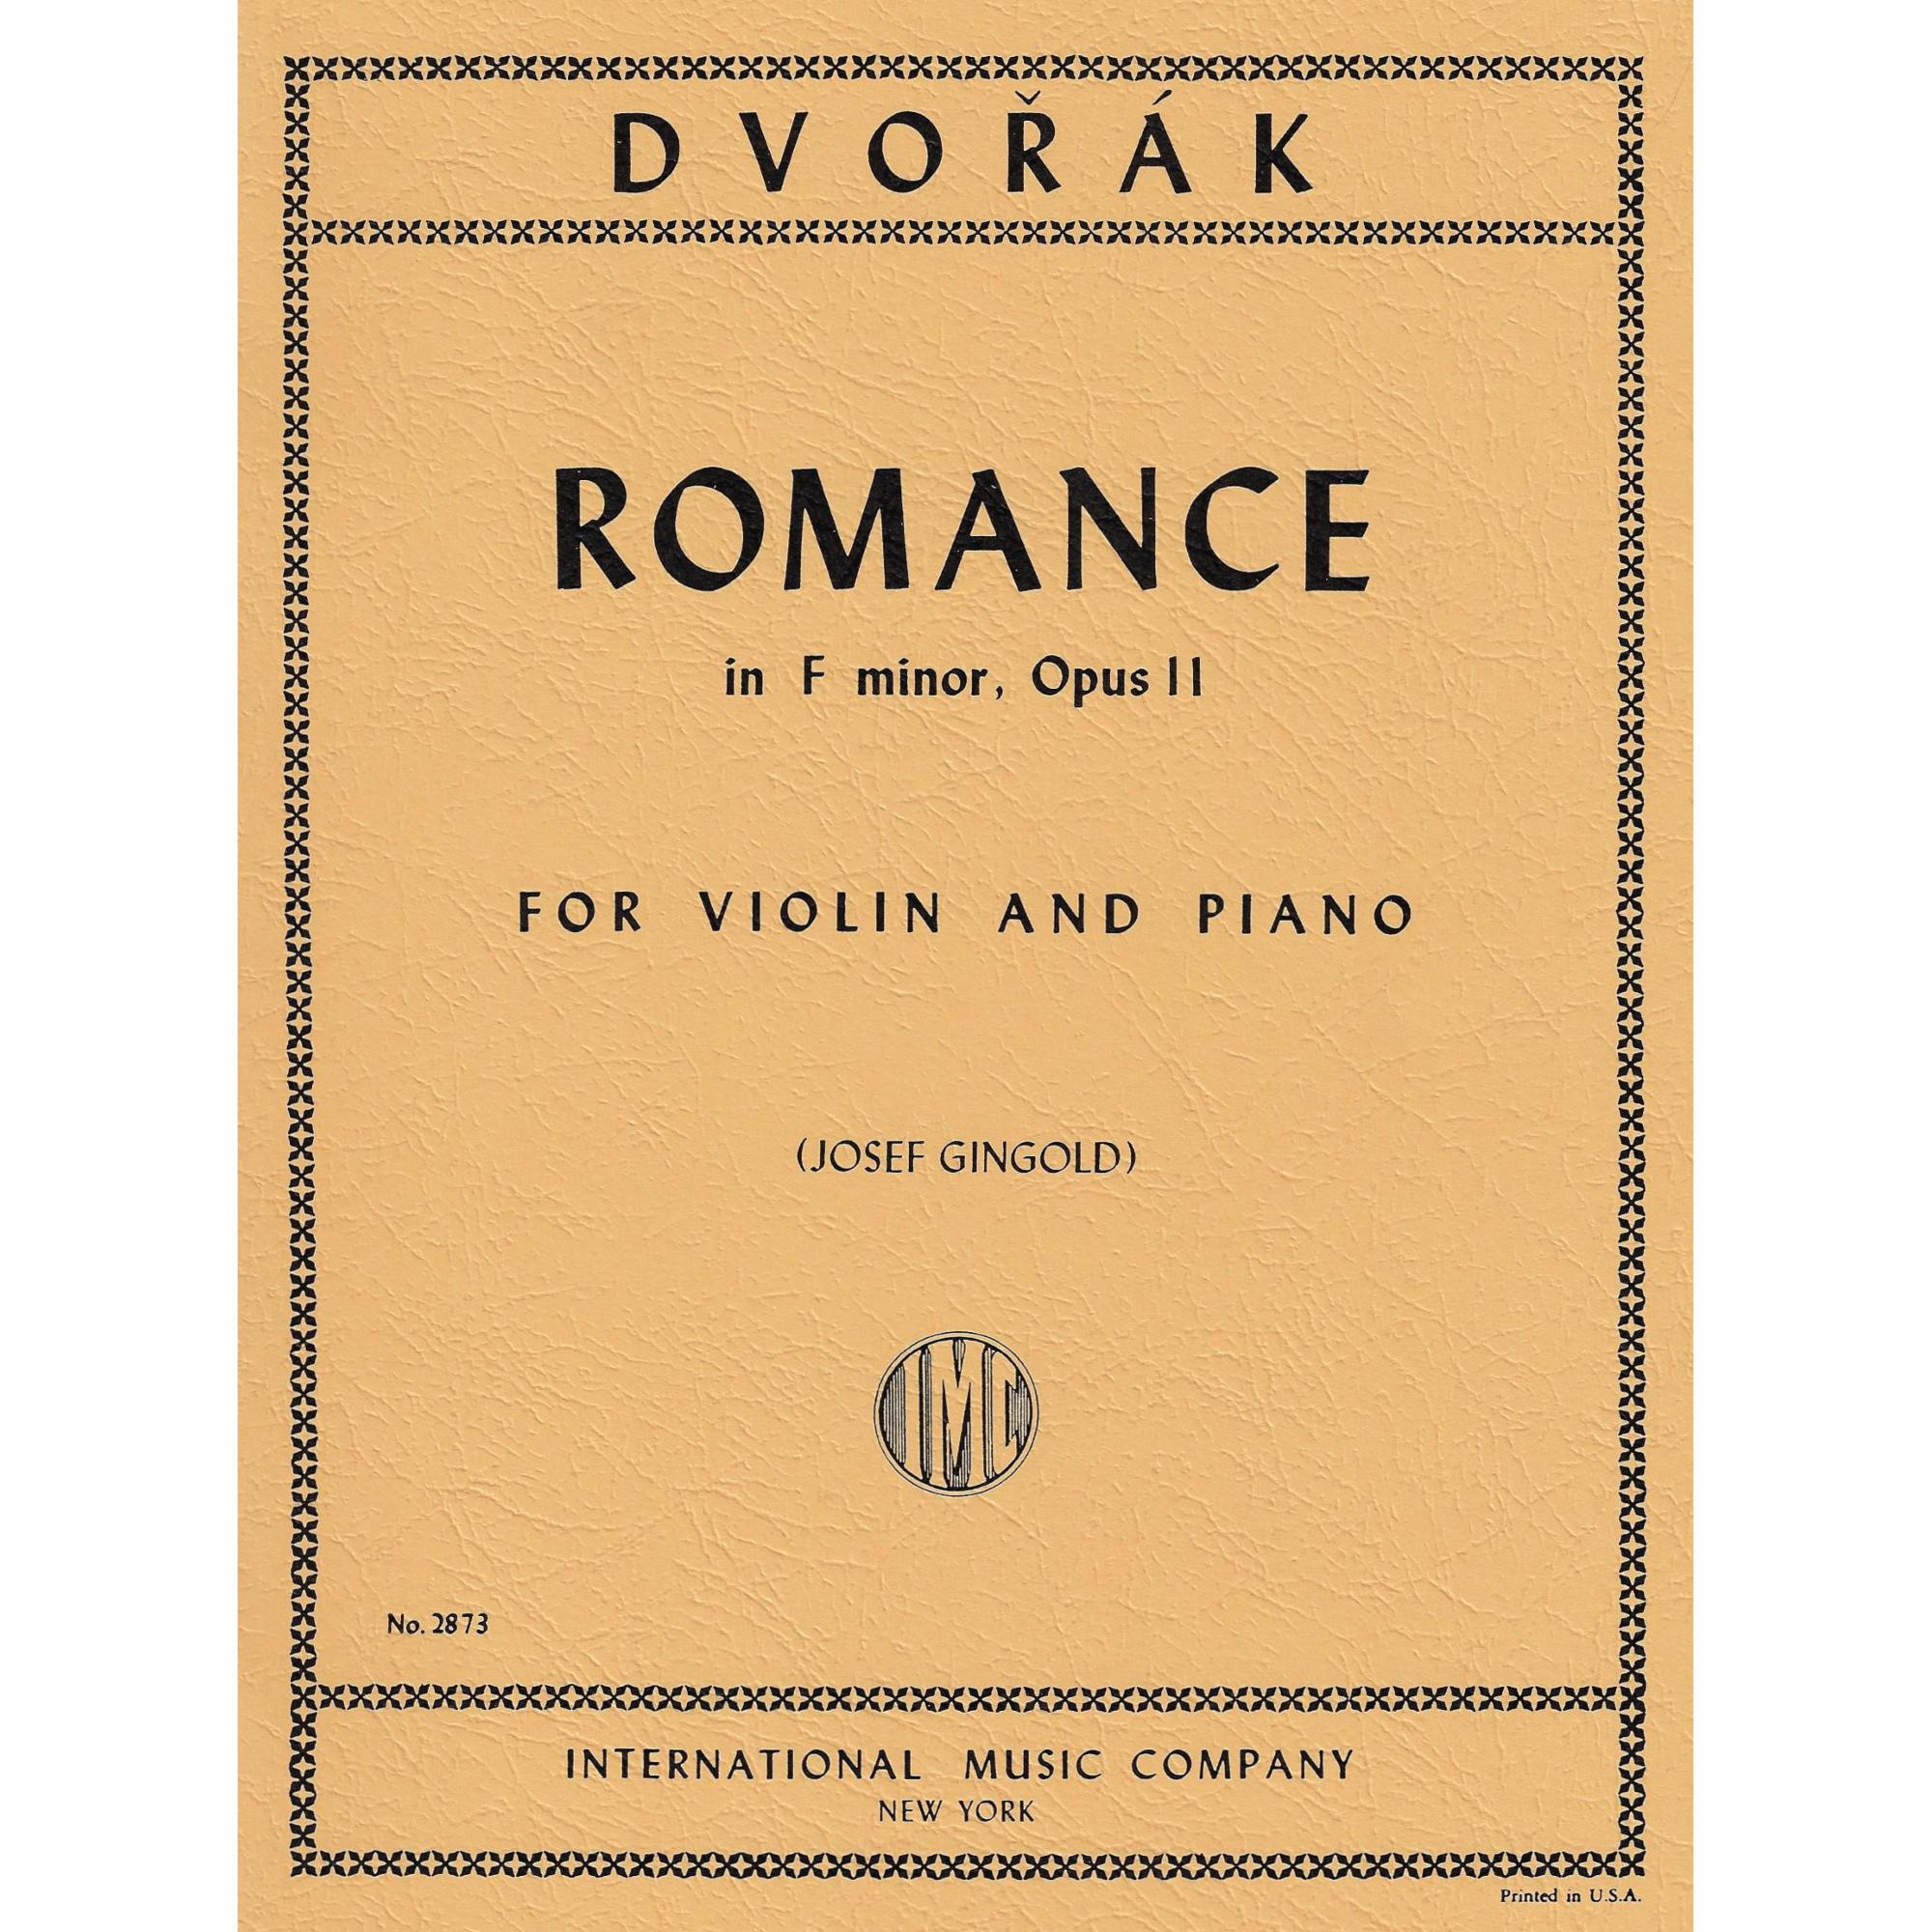 Dvorak -- Romance in F Minor, Op. 11 for Violin and Piano